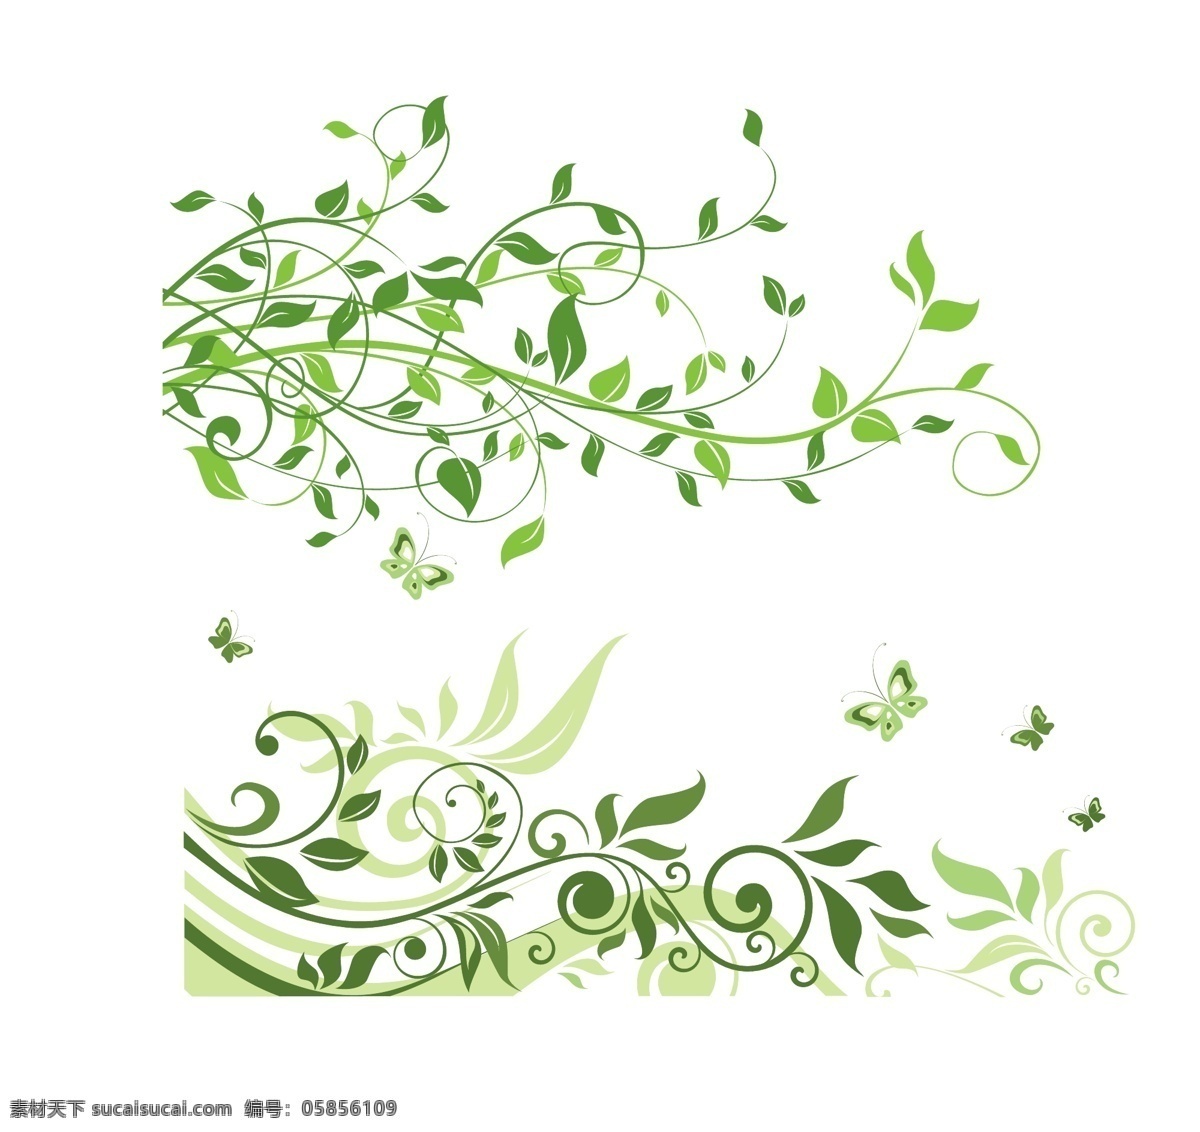 矢量精美绿叶 精致 花朵 花纹 绿叶 精美绿叶图案 春意盎然 精美藤蔓叶子 矢量 精美写真绿叶 圆形 小花 草 树叶